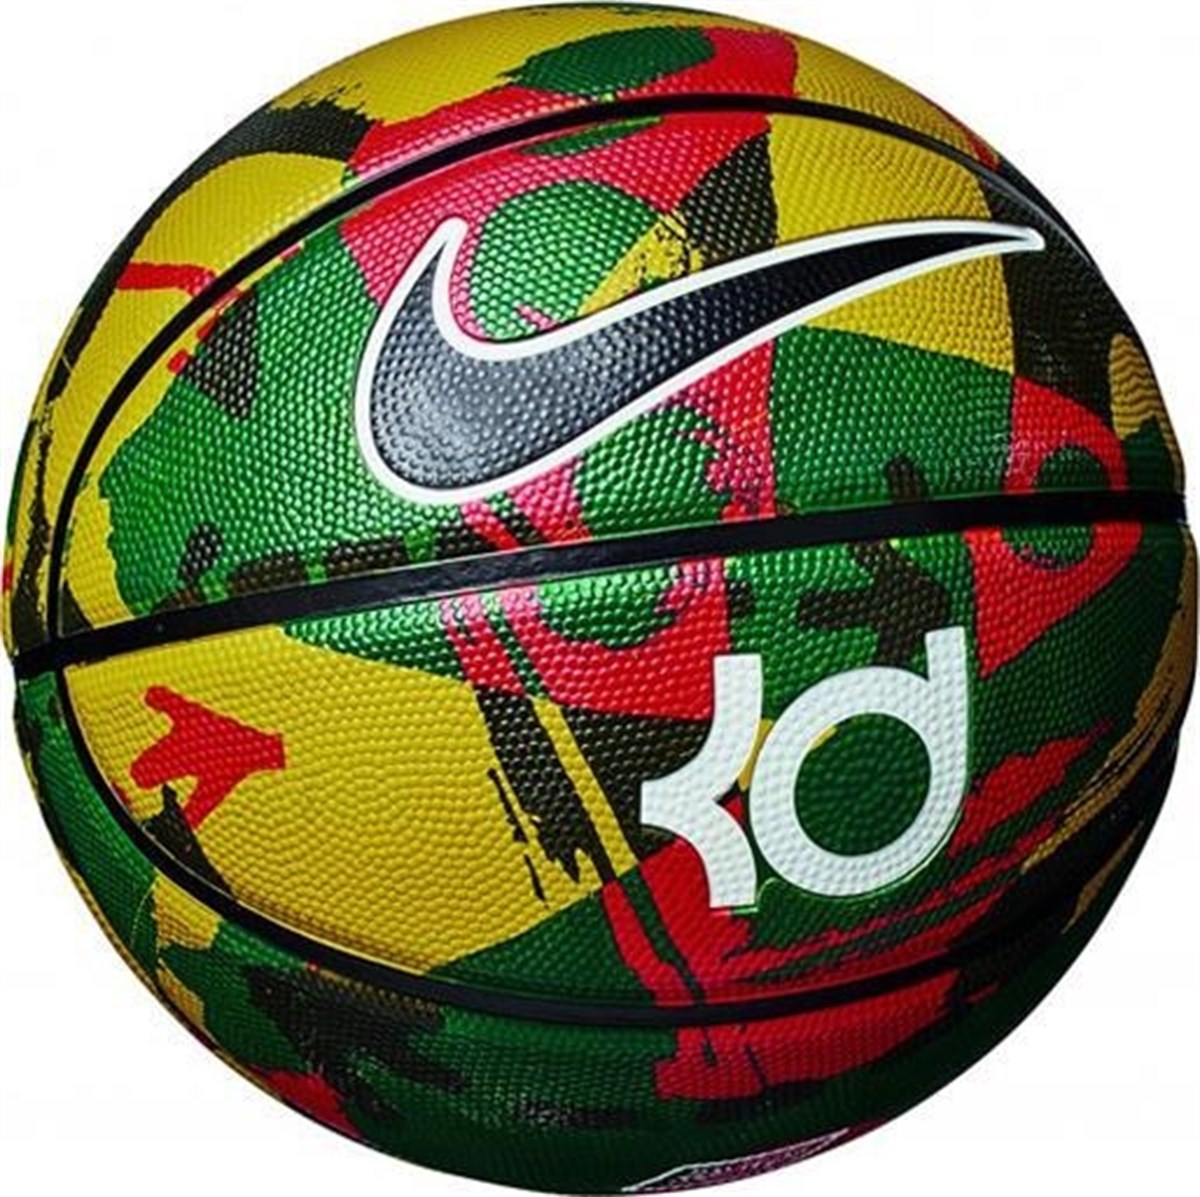 Oceania Muddy visit Nike Kd Playground Basketbol Topu NKI13-985